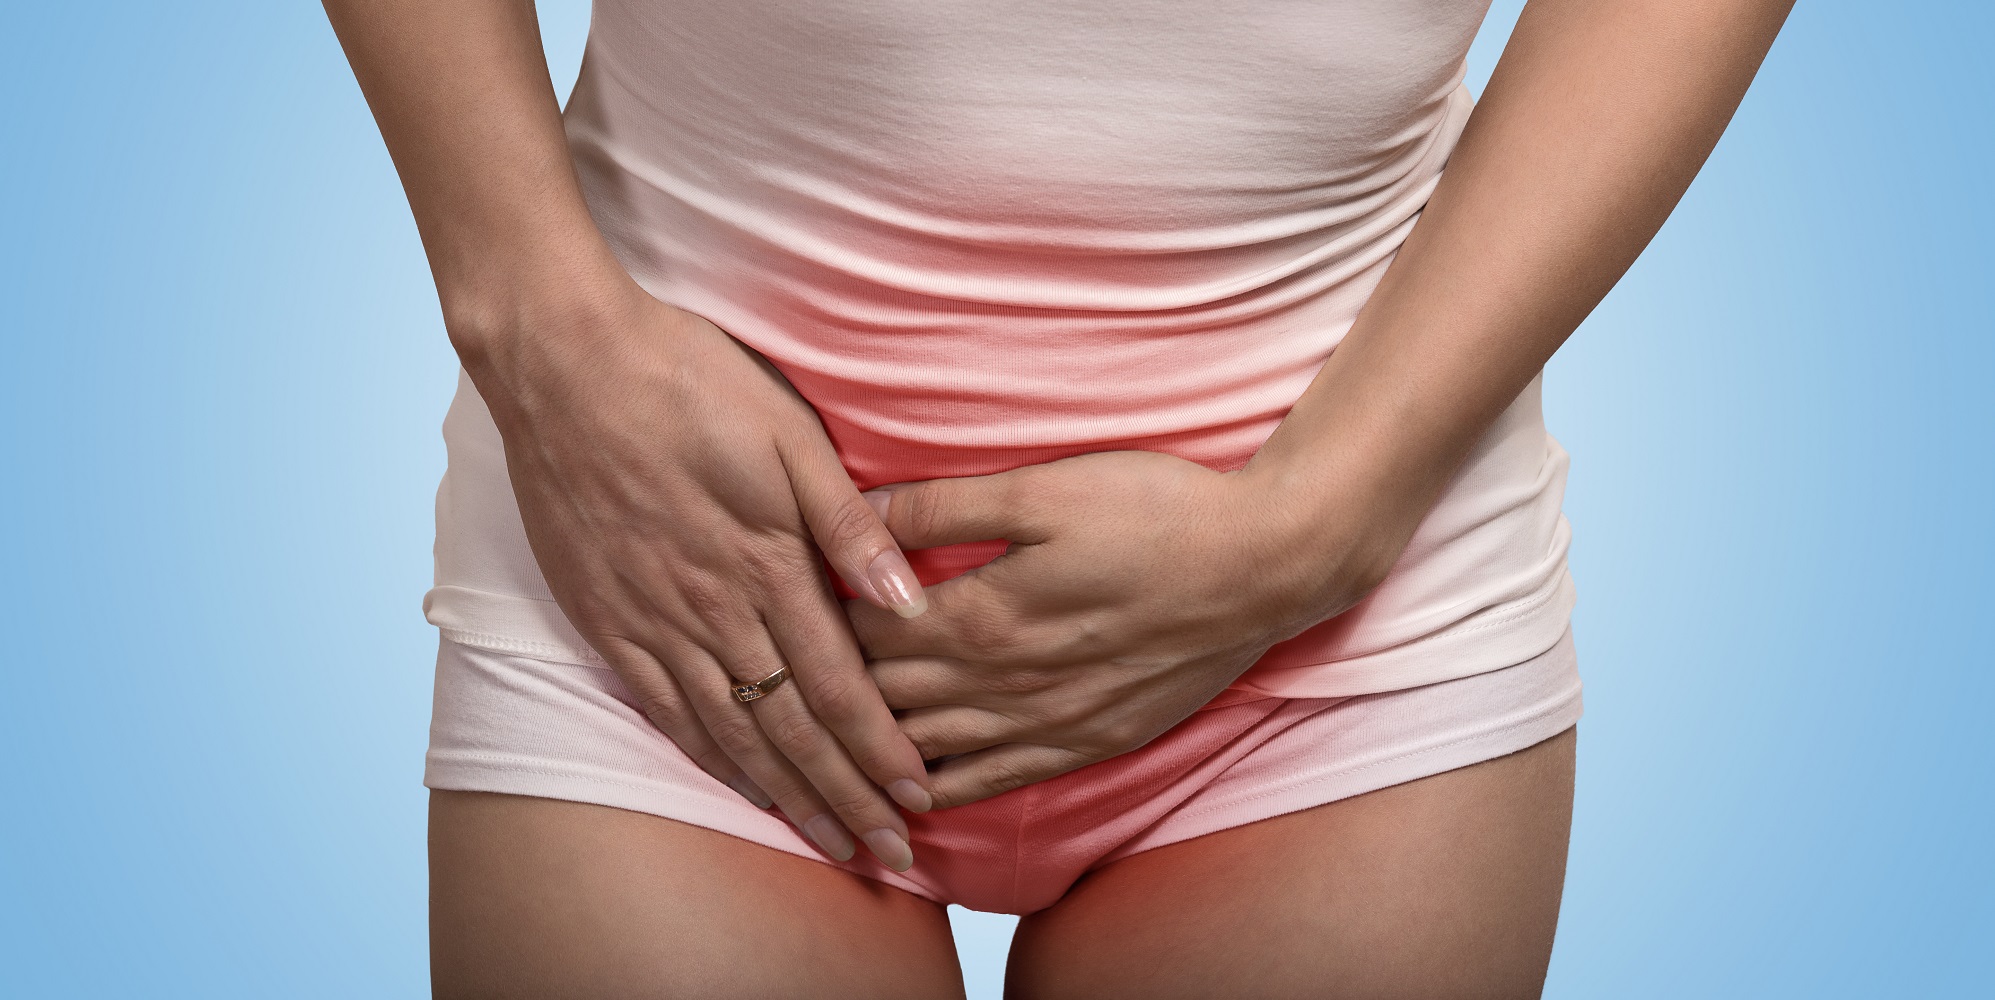 Symptoms of gonorrhea in Women